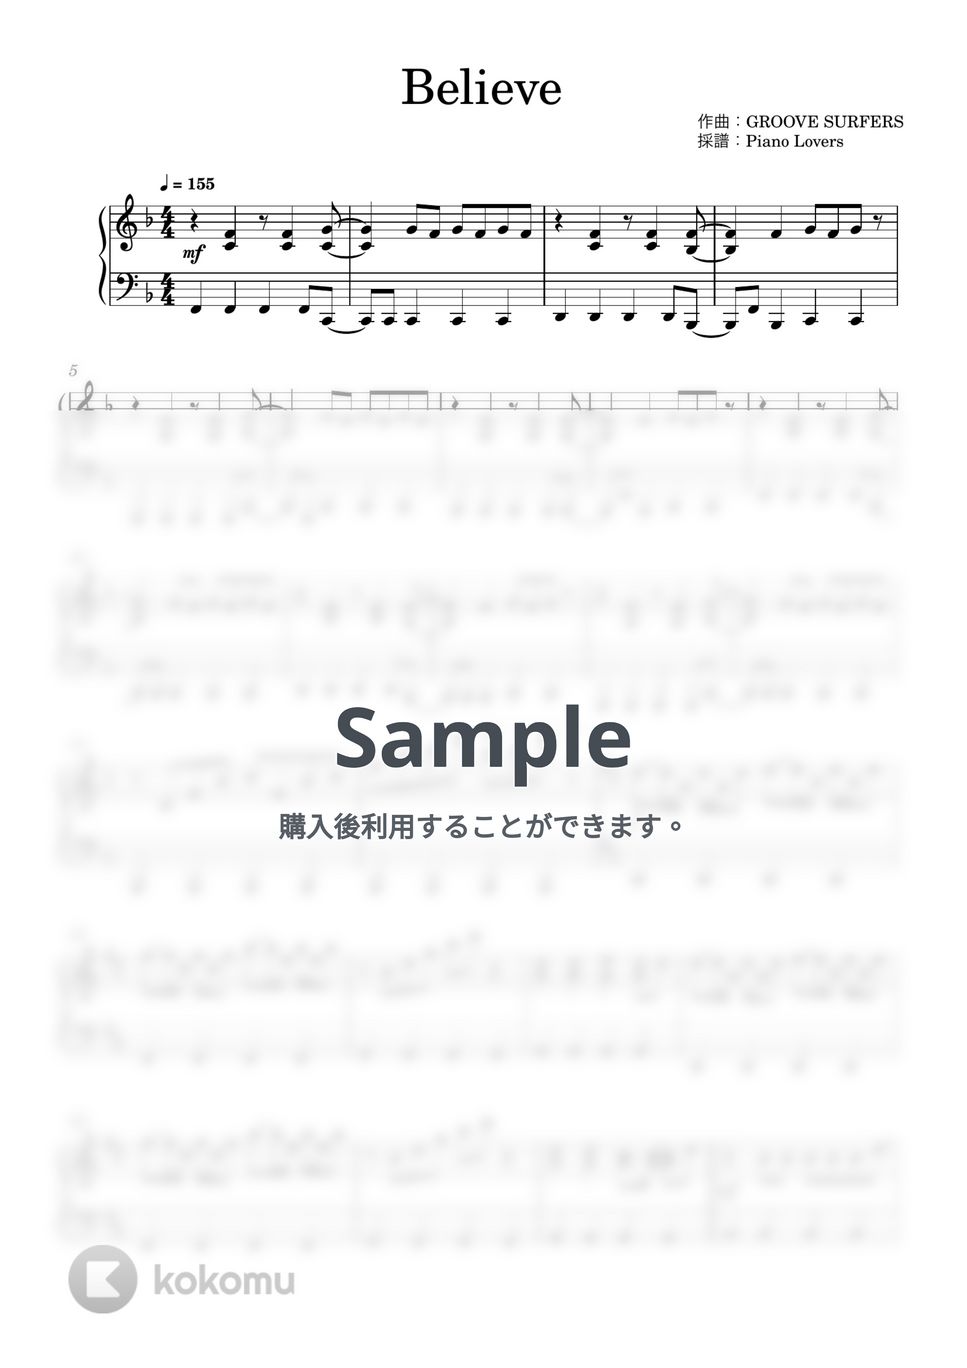 Folder5 - Believe (ワンピース / ピアノ楽譜 / 初級) by Piano Lovers. jp